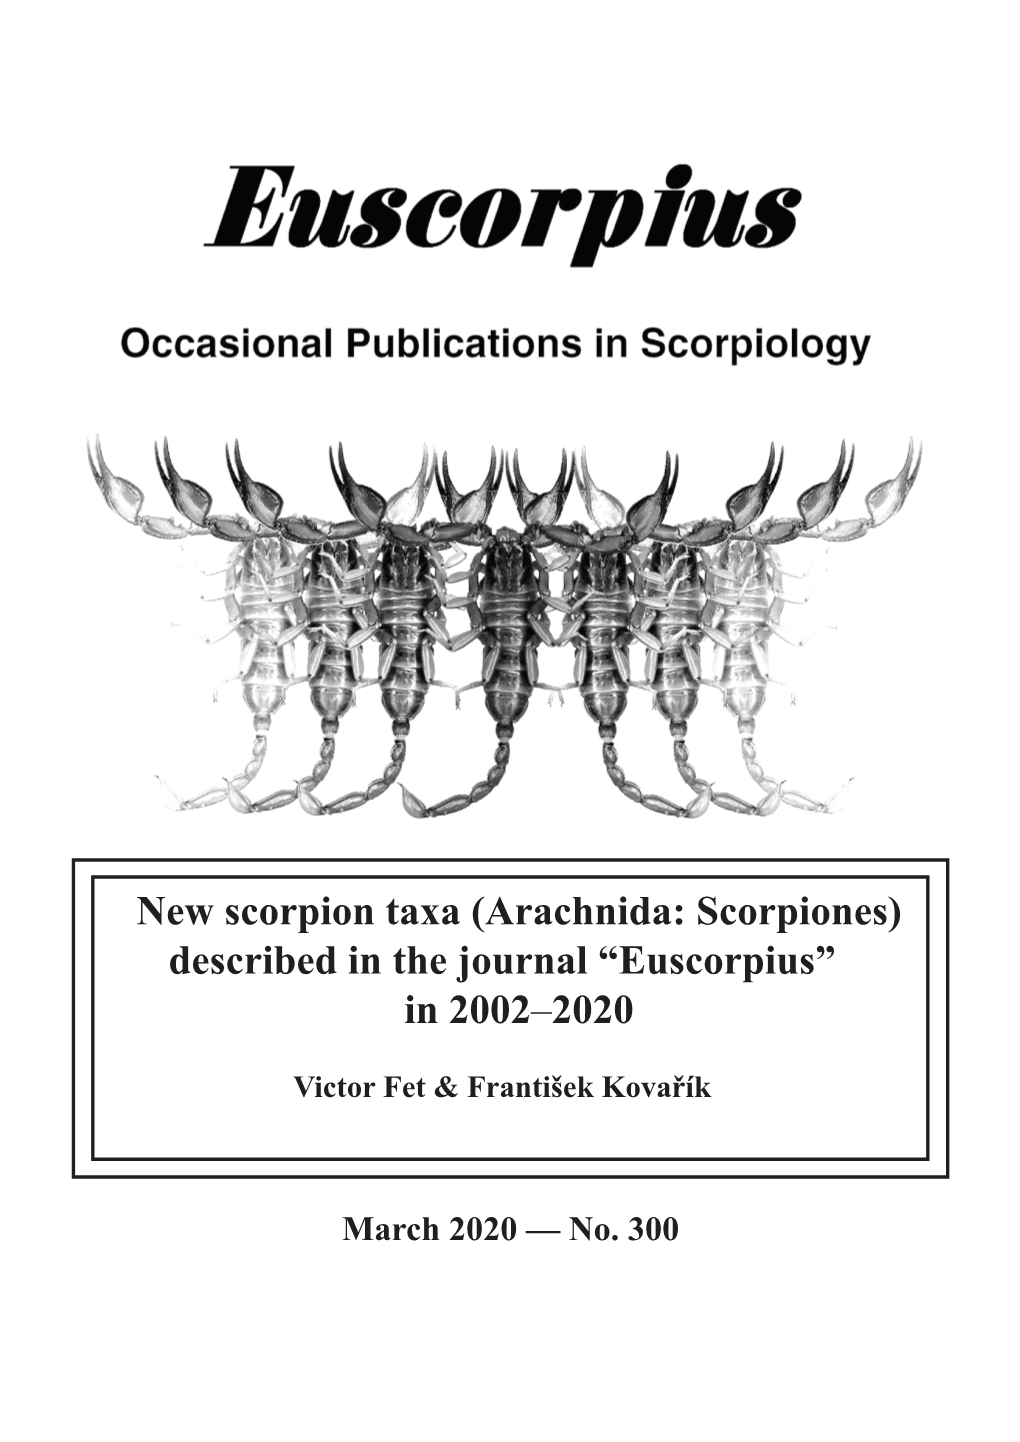 New Scorpion Taxa (Arachnida: Scorpiones) Described in the Journal “Euscorpius” in 2002–2020